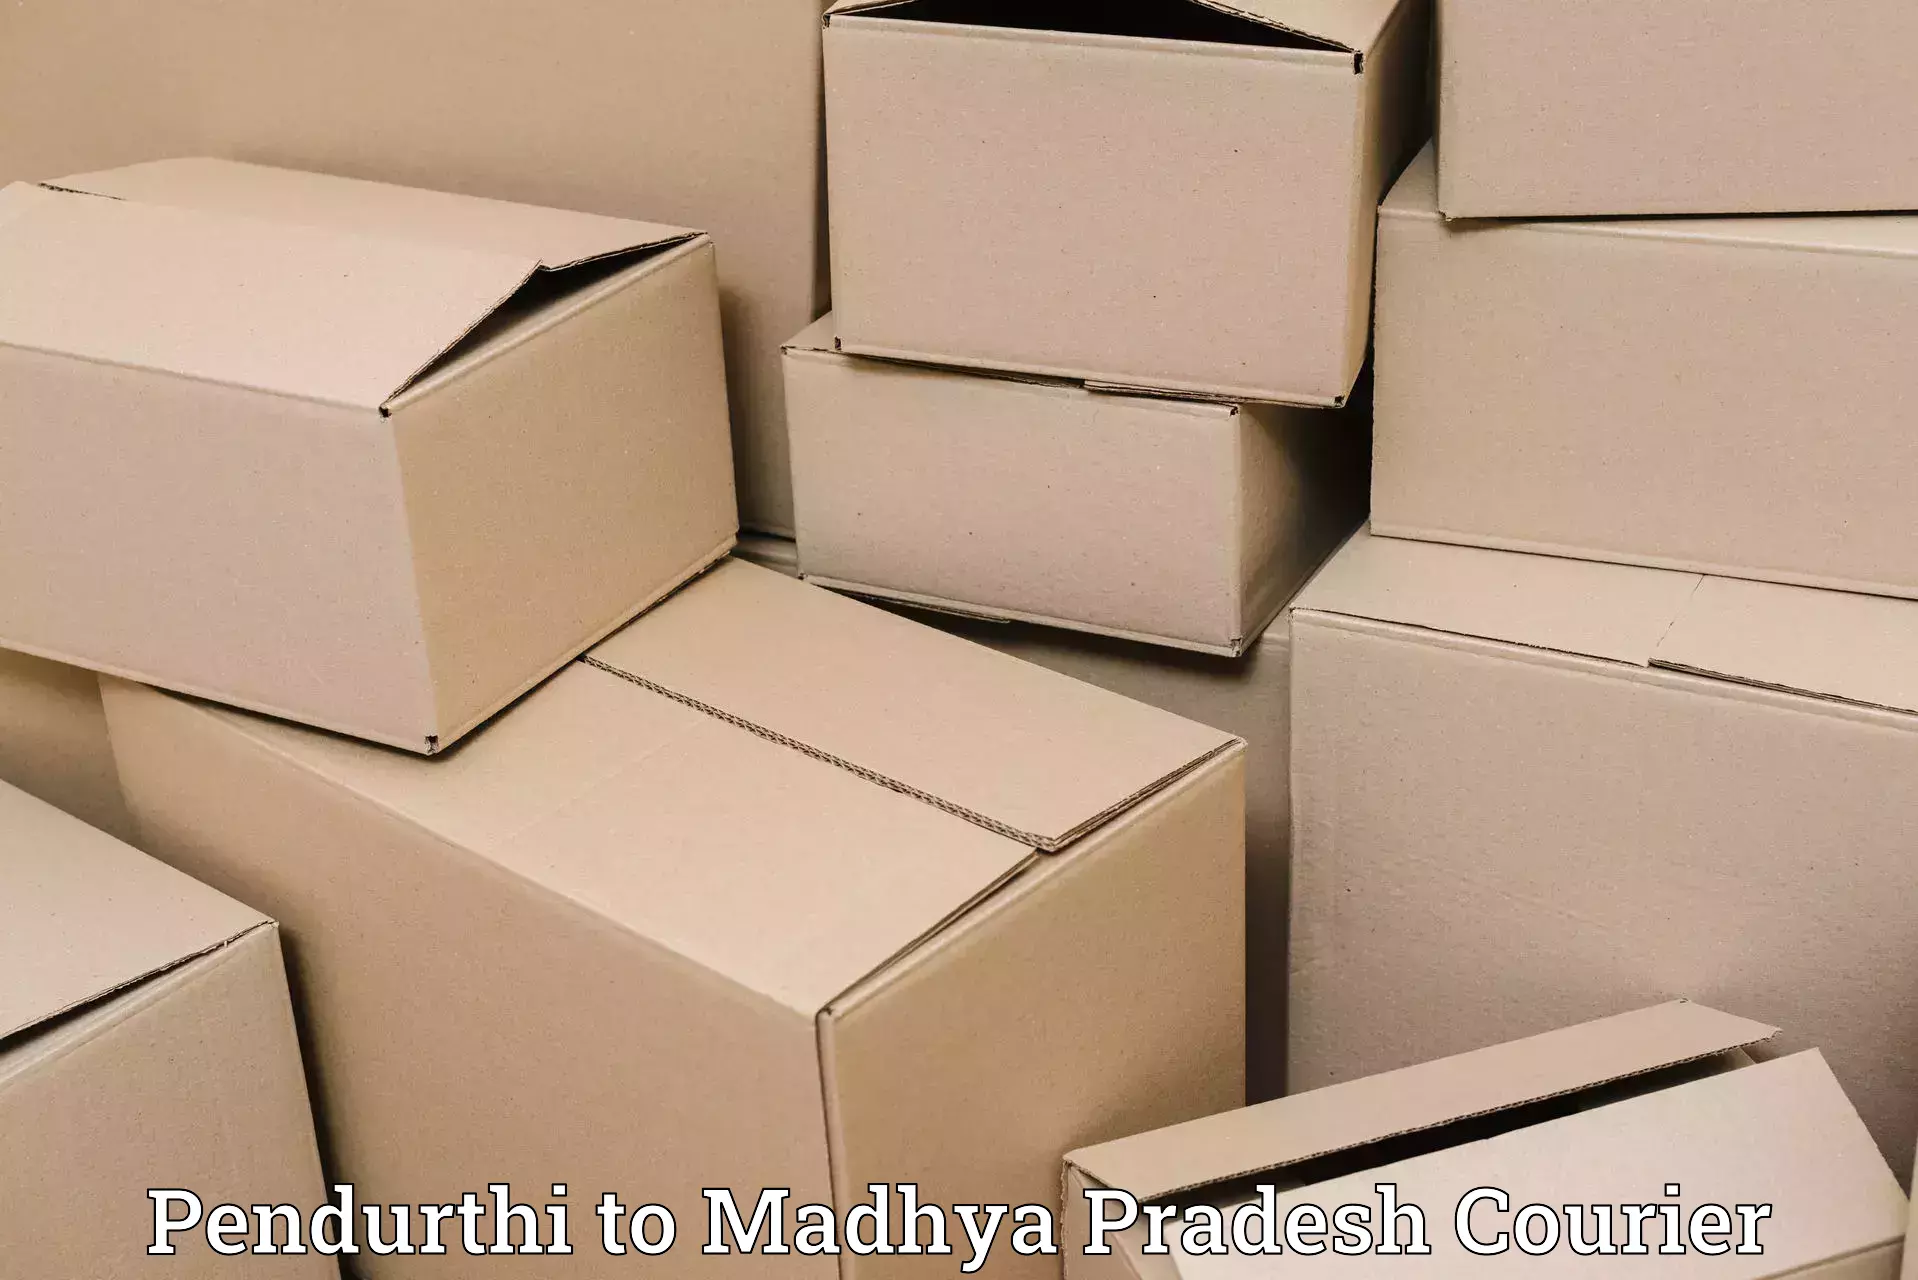 Smart logistics strategies Pendurthi to Madhya Pradesh